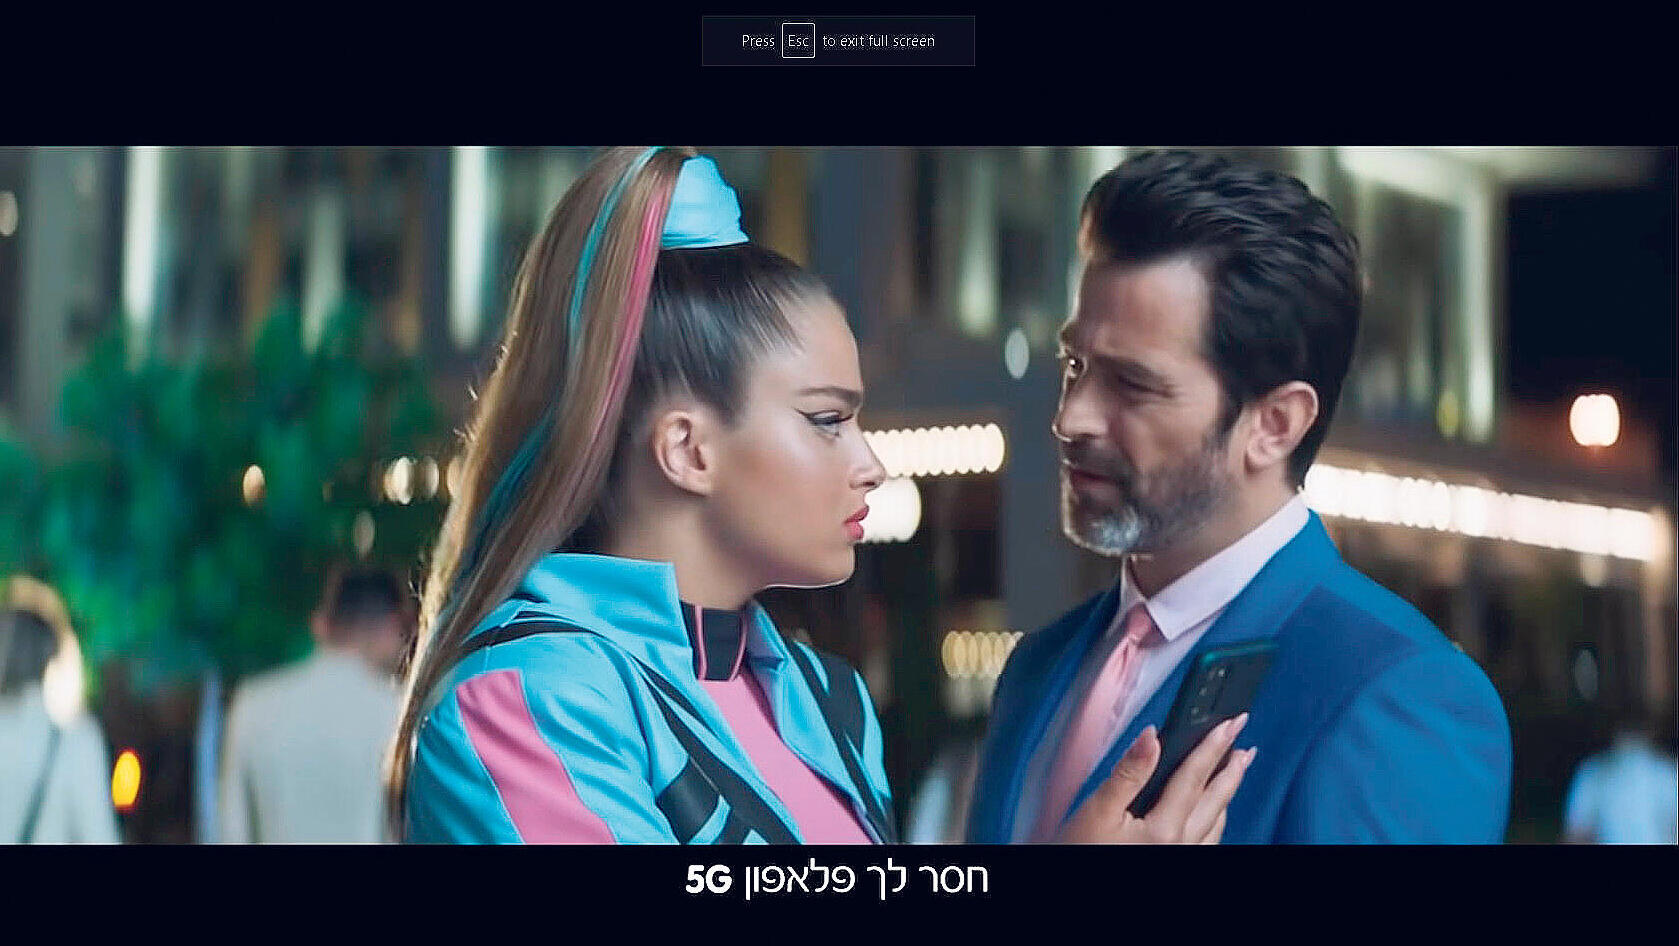 יהודה לוי ונעה קירל בפרסומת של פלאפון לדור 5